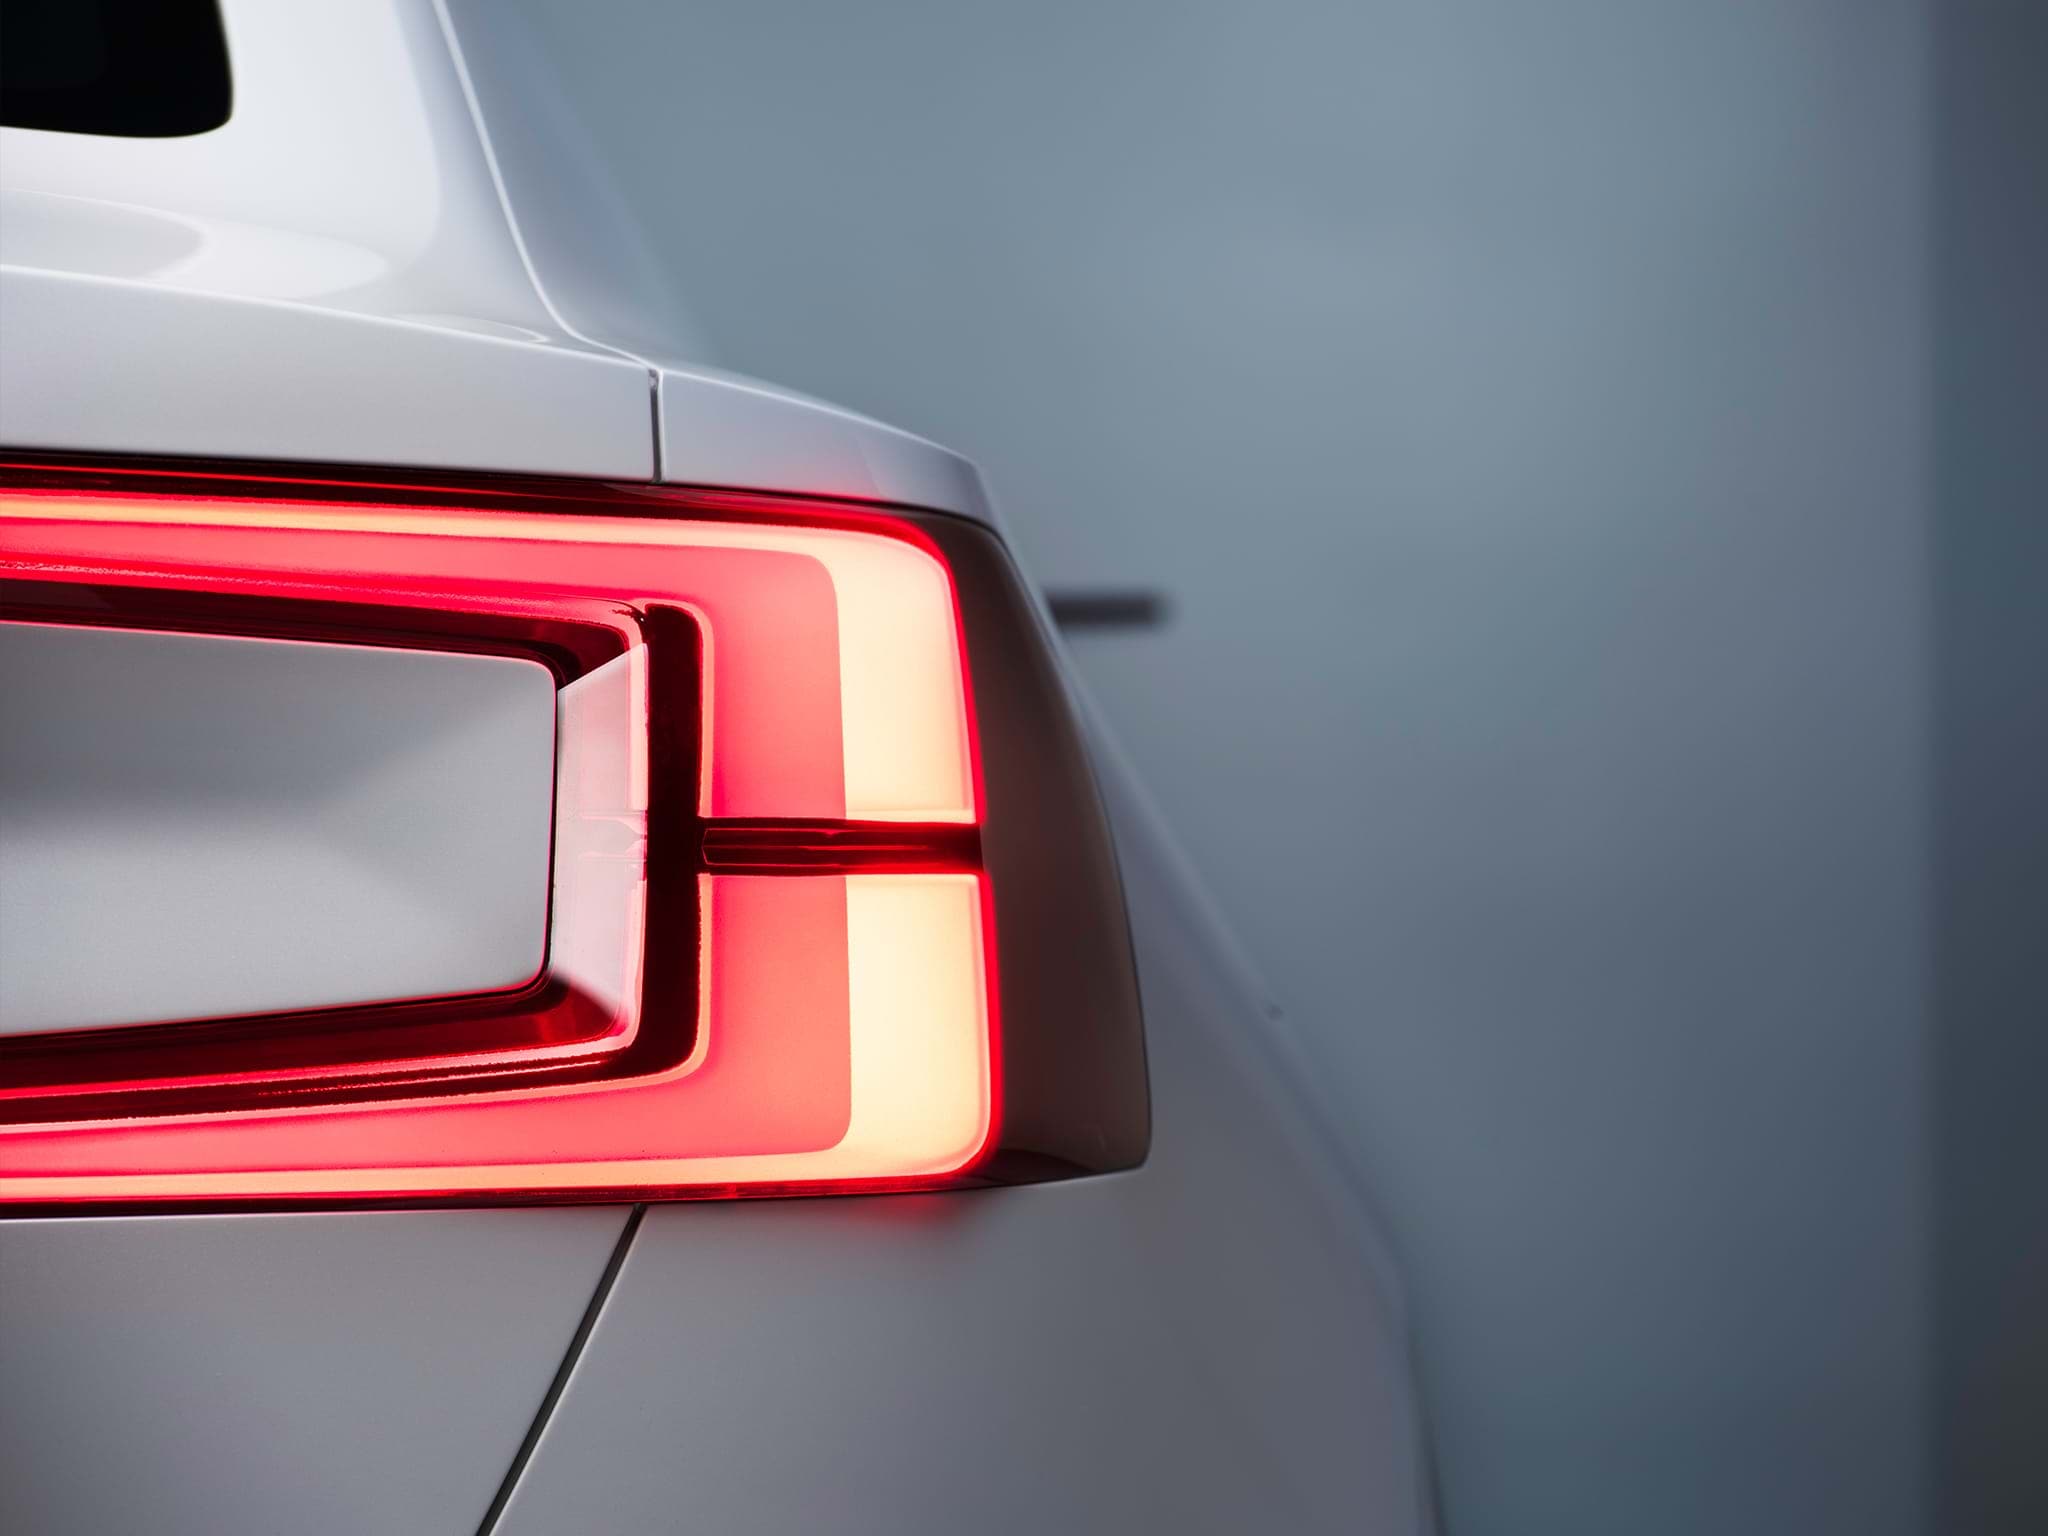 Gedeeltelijk zicht op de achterkant van een witte Volvo Concept 40.2 sedan met verlichte achterlichten